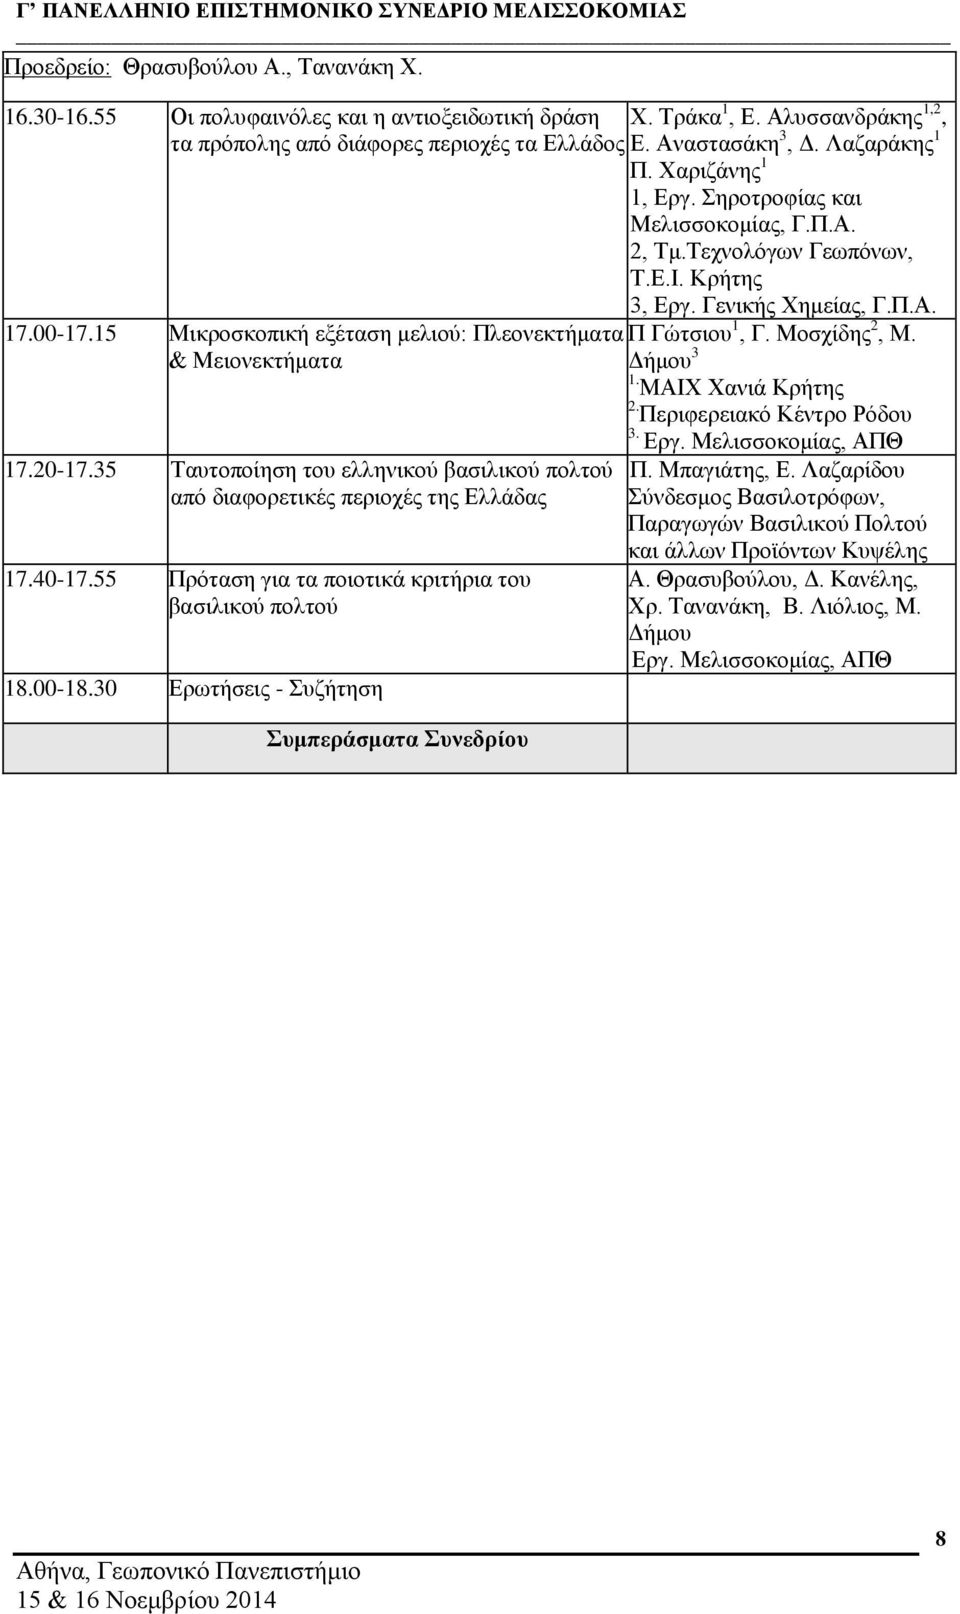 55 Πρόταση για τα ποιοτικά κριτήρια του βασιλικού πολτού 18.00-18.30 Ερωτήσεις - Συζήτηση Συμπεράσματα Συνεδρίου 1, Εργ. Σηροτροφίας και Μελισσοκομίας, Γ.Π.Α. 2, Τμ.Τεχνολόγων Γεωπόνων, Τ.Ε.Ι.